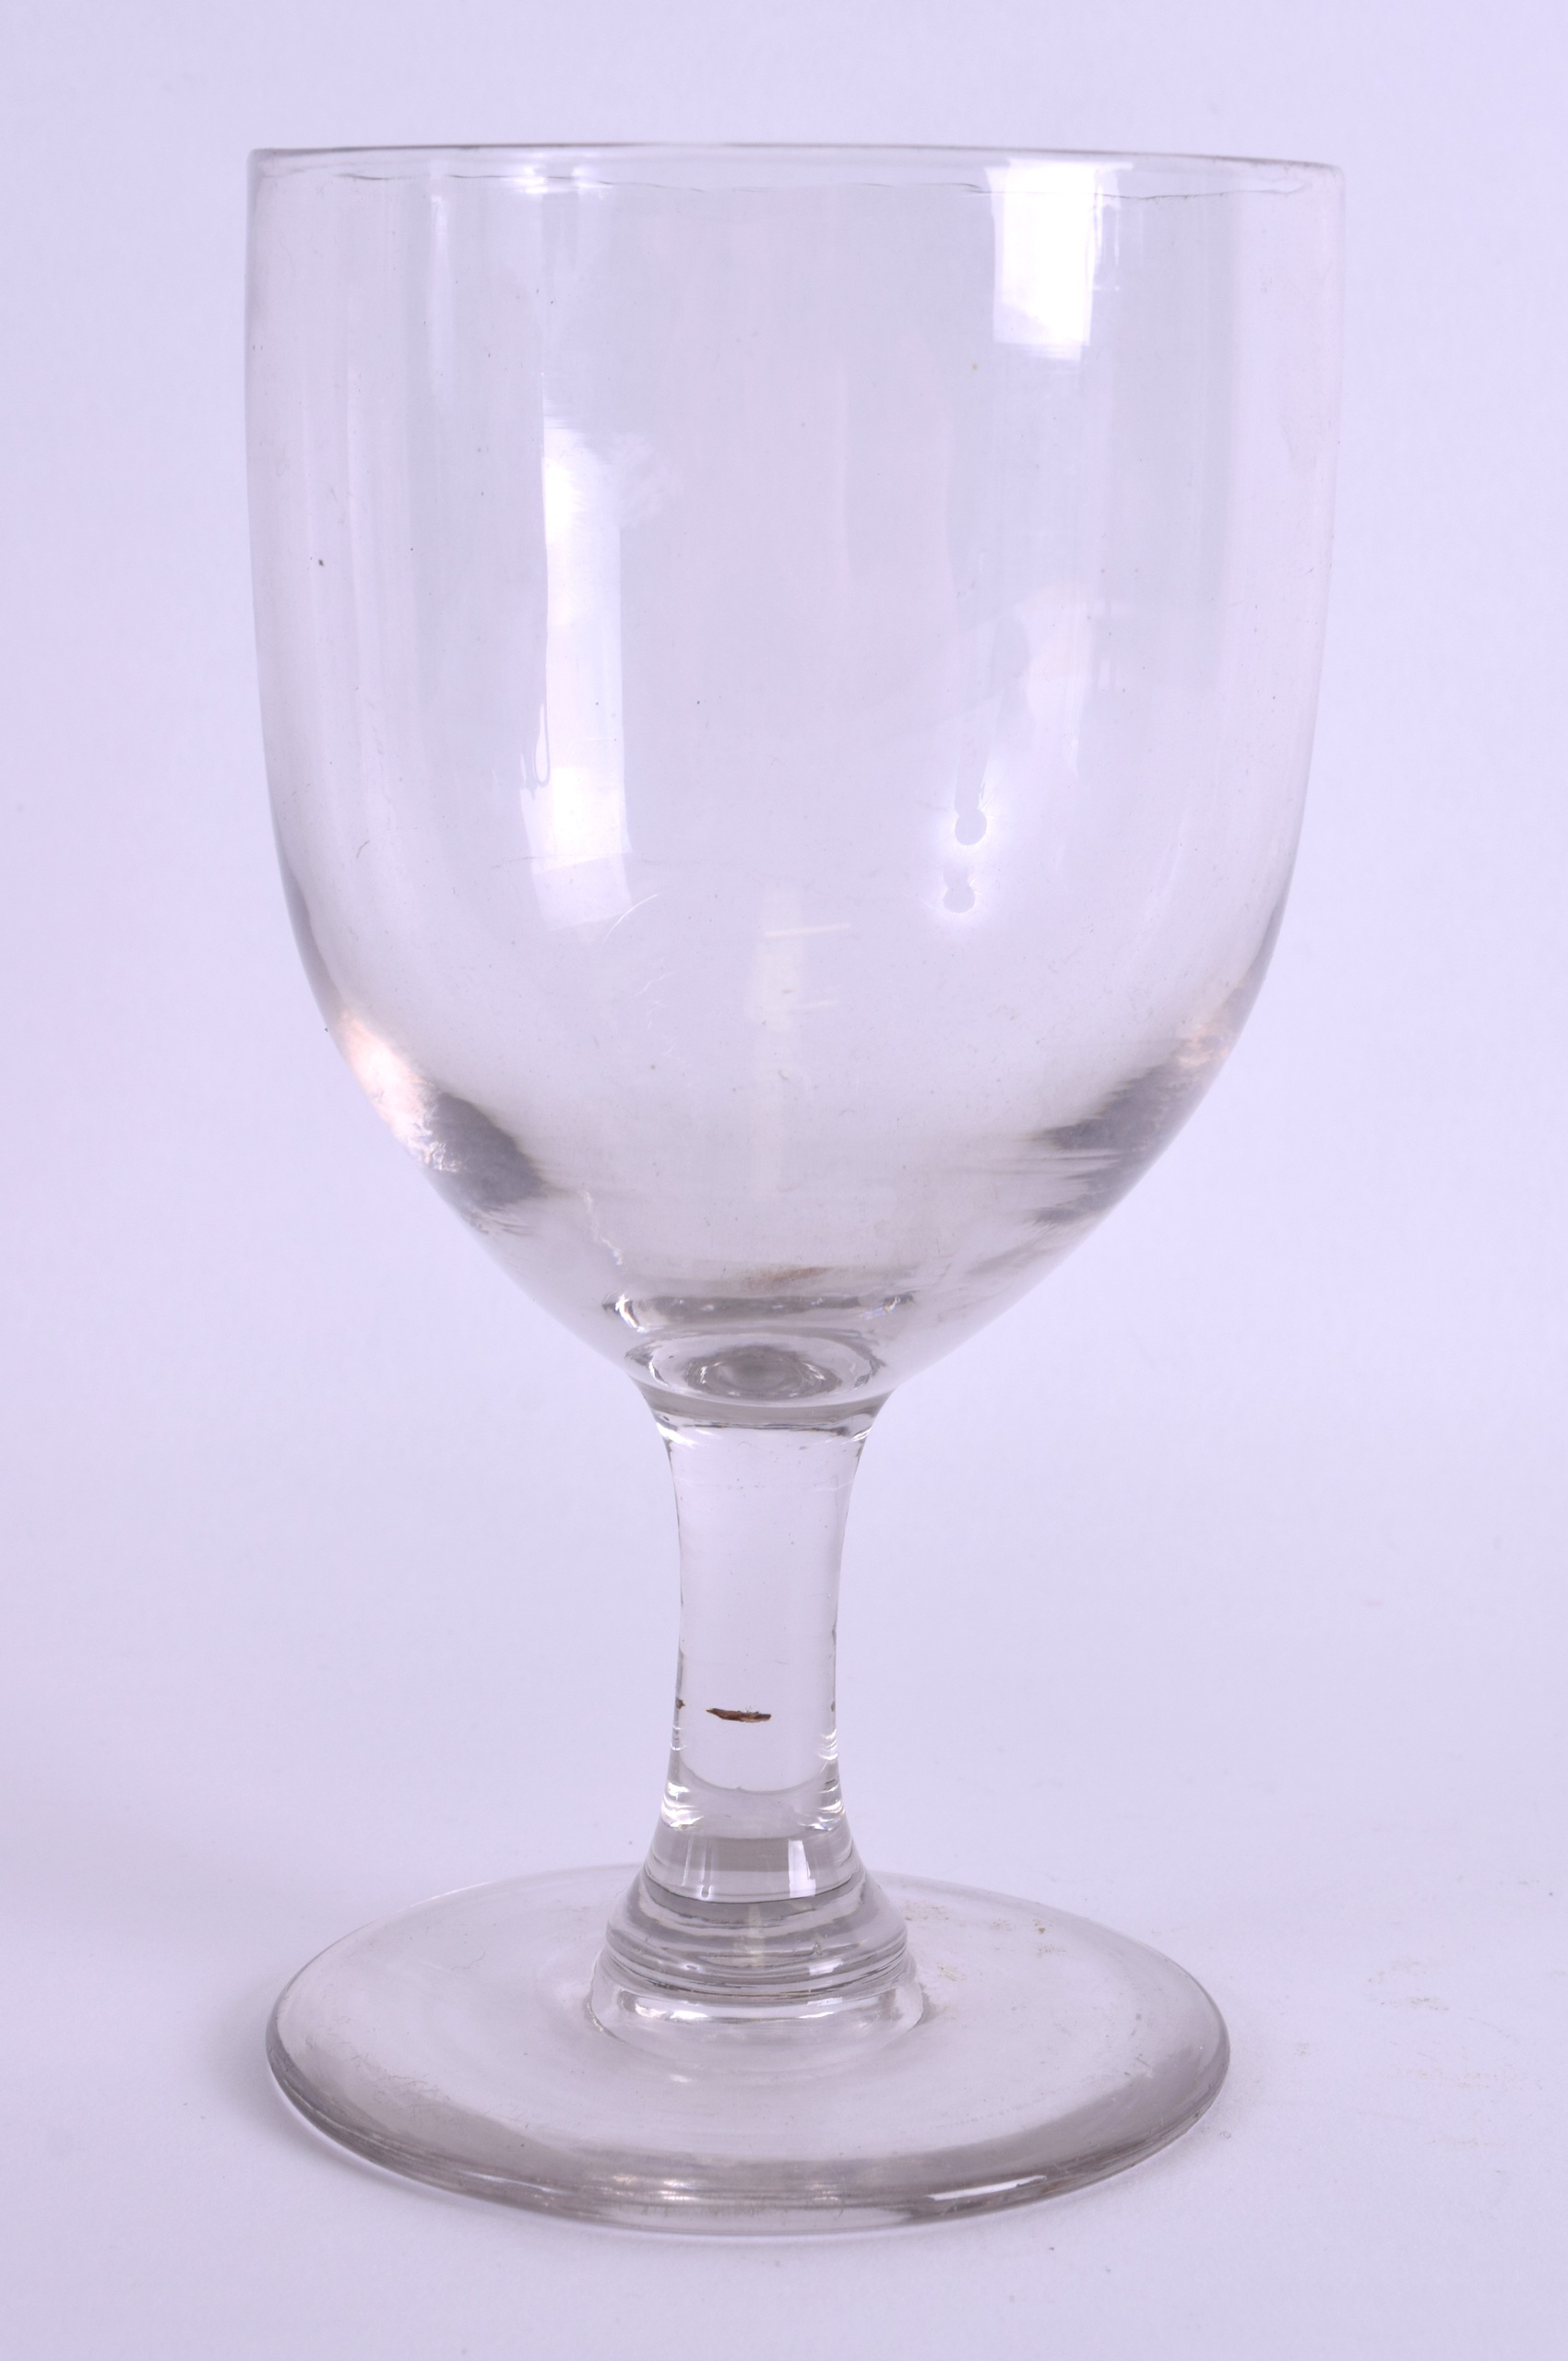 A GEORGE III GLASS. 17 cm high.